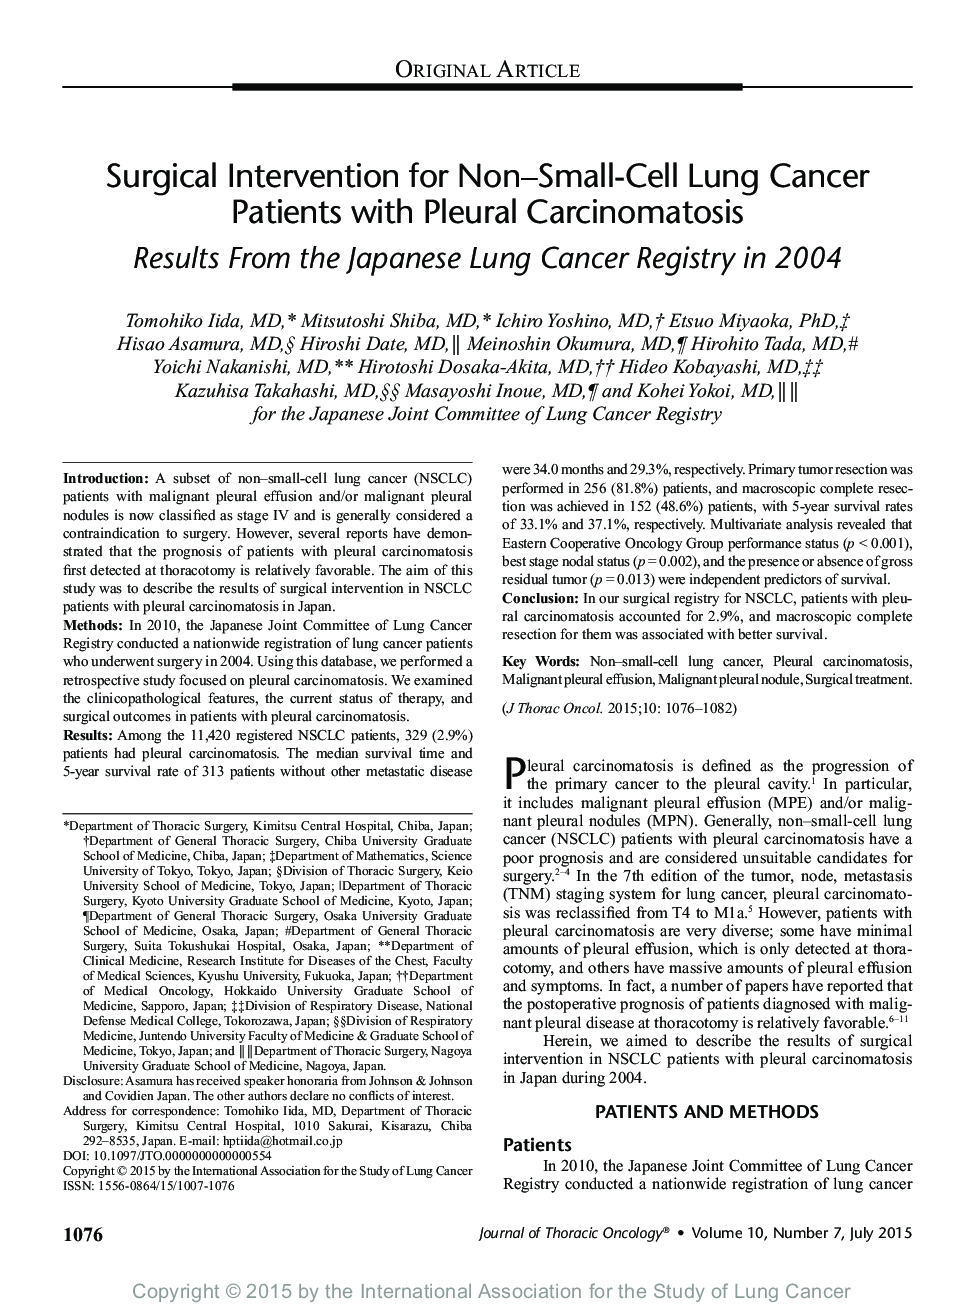 مداخله جراحی برای بیماران مبتلا به سرطان ریه های غیر سلولی مبتلا به سرطان پروستات: نتایج حاصل از ثبت ریه سرطان ریه ها در سال 2004 